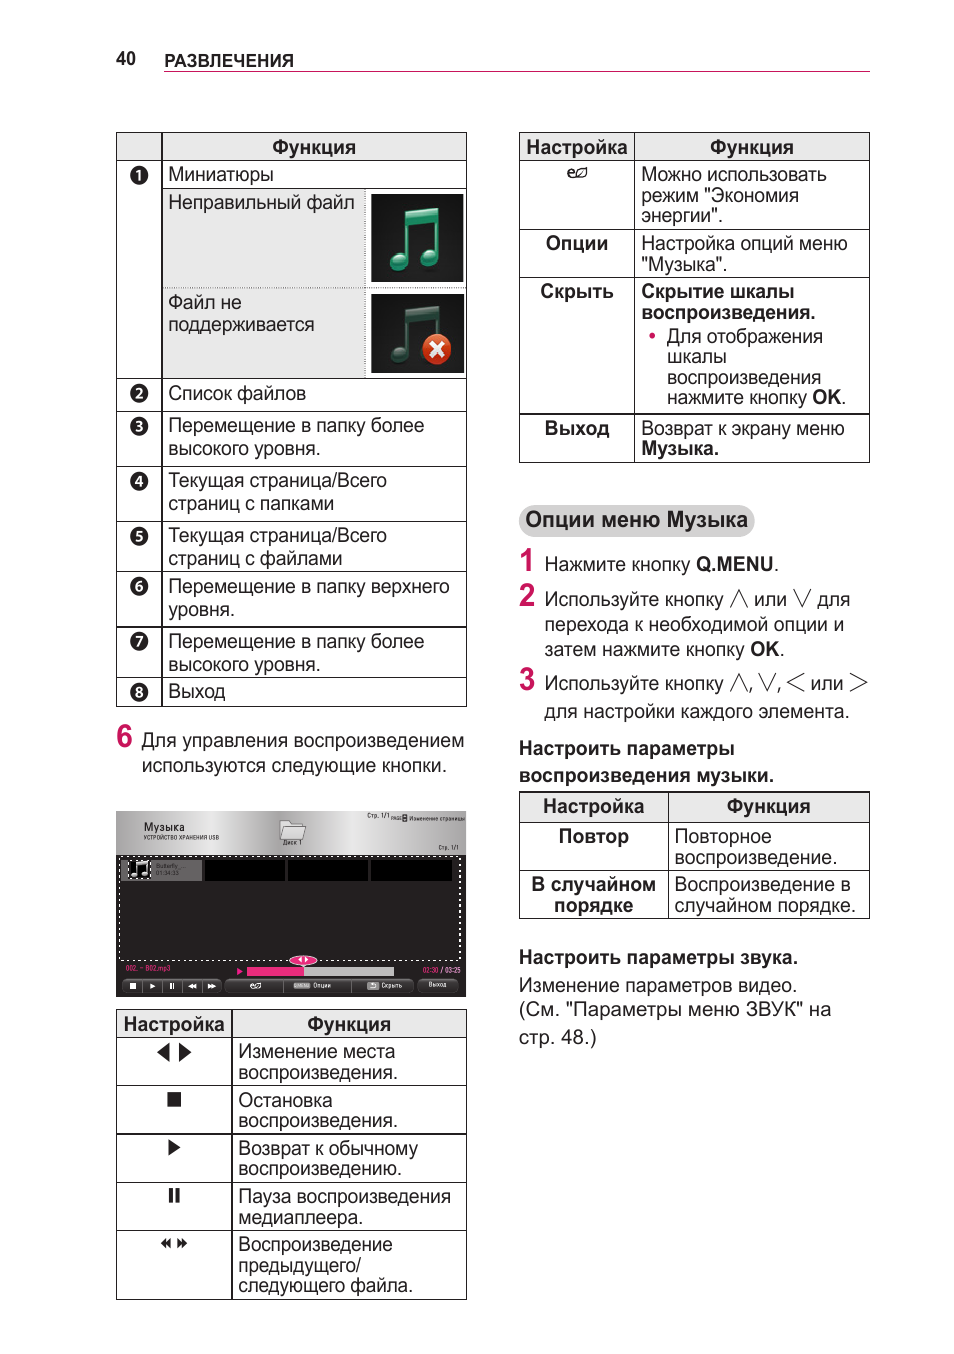 Опции меню музыка | Инструкция по эксплуатации LG PG60G | Страница 40 / 60